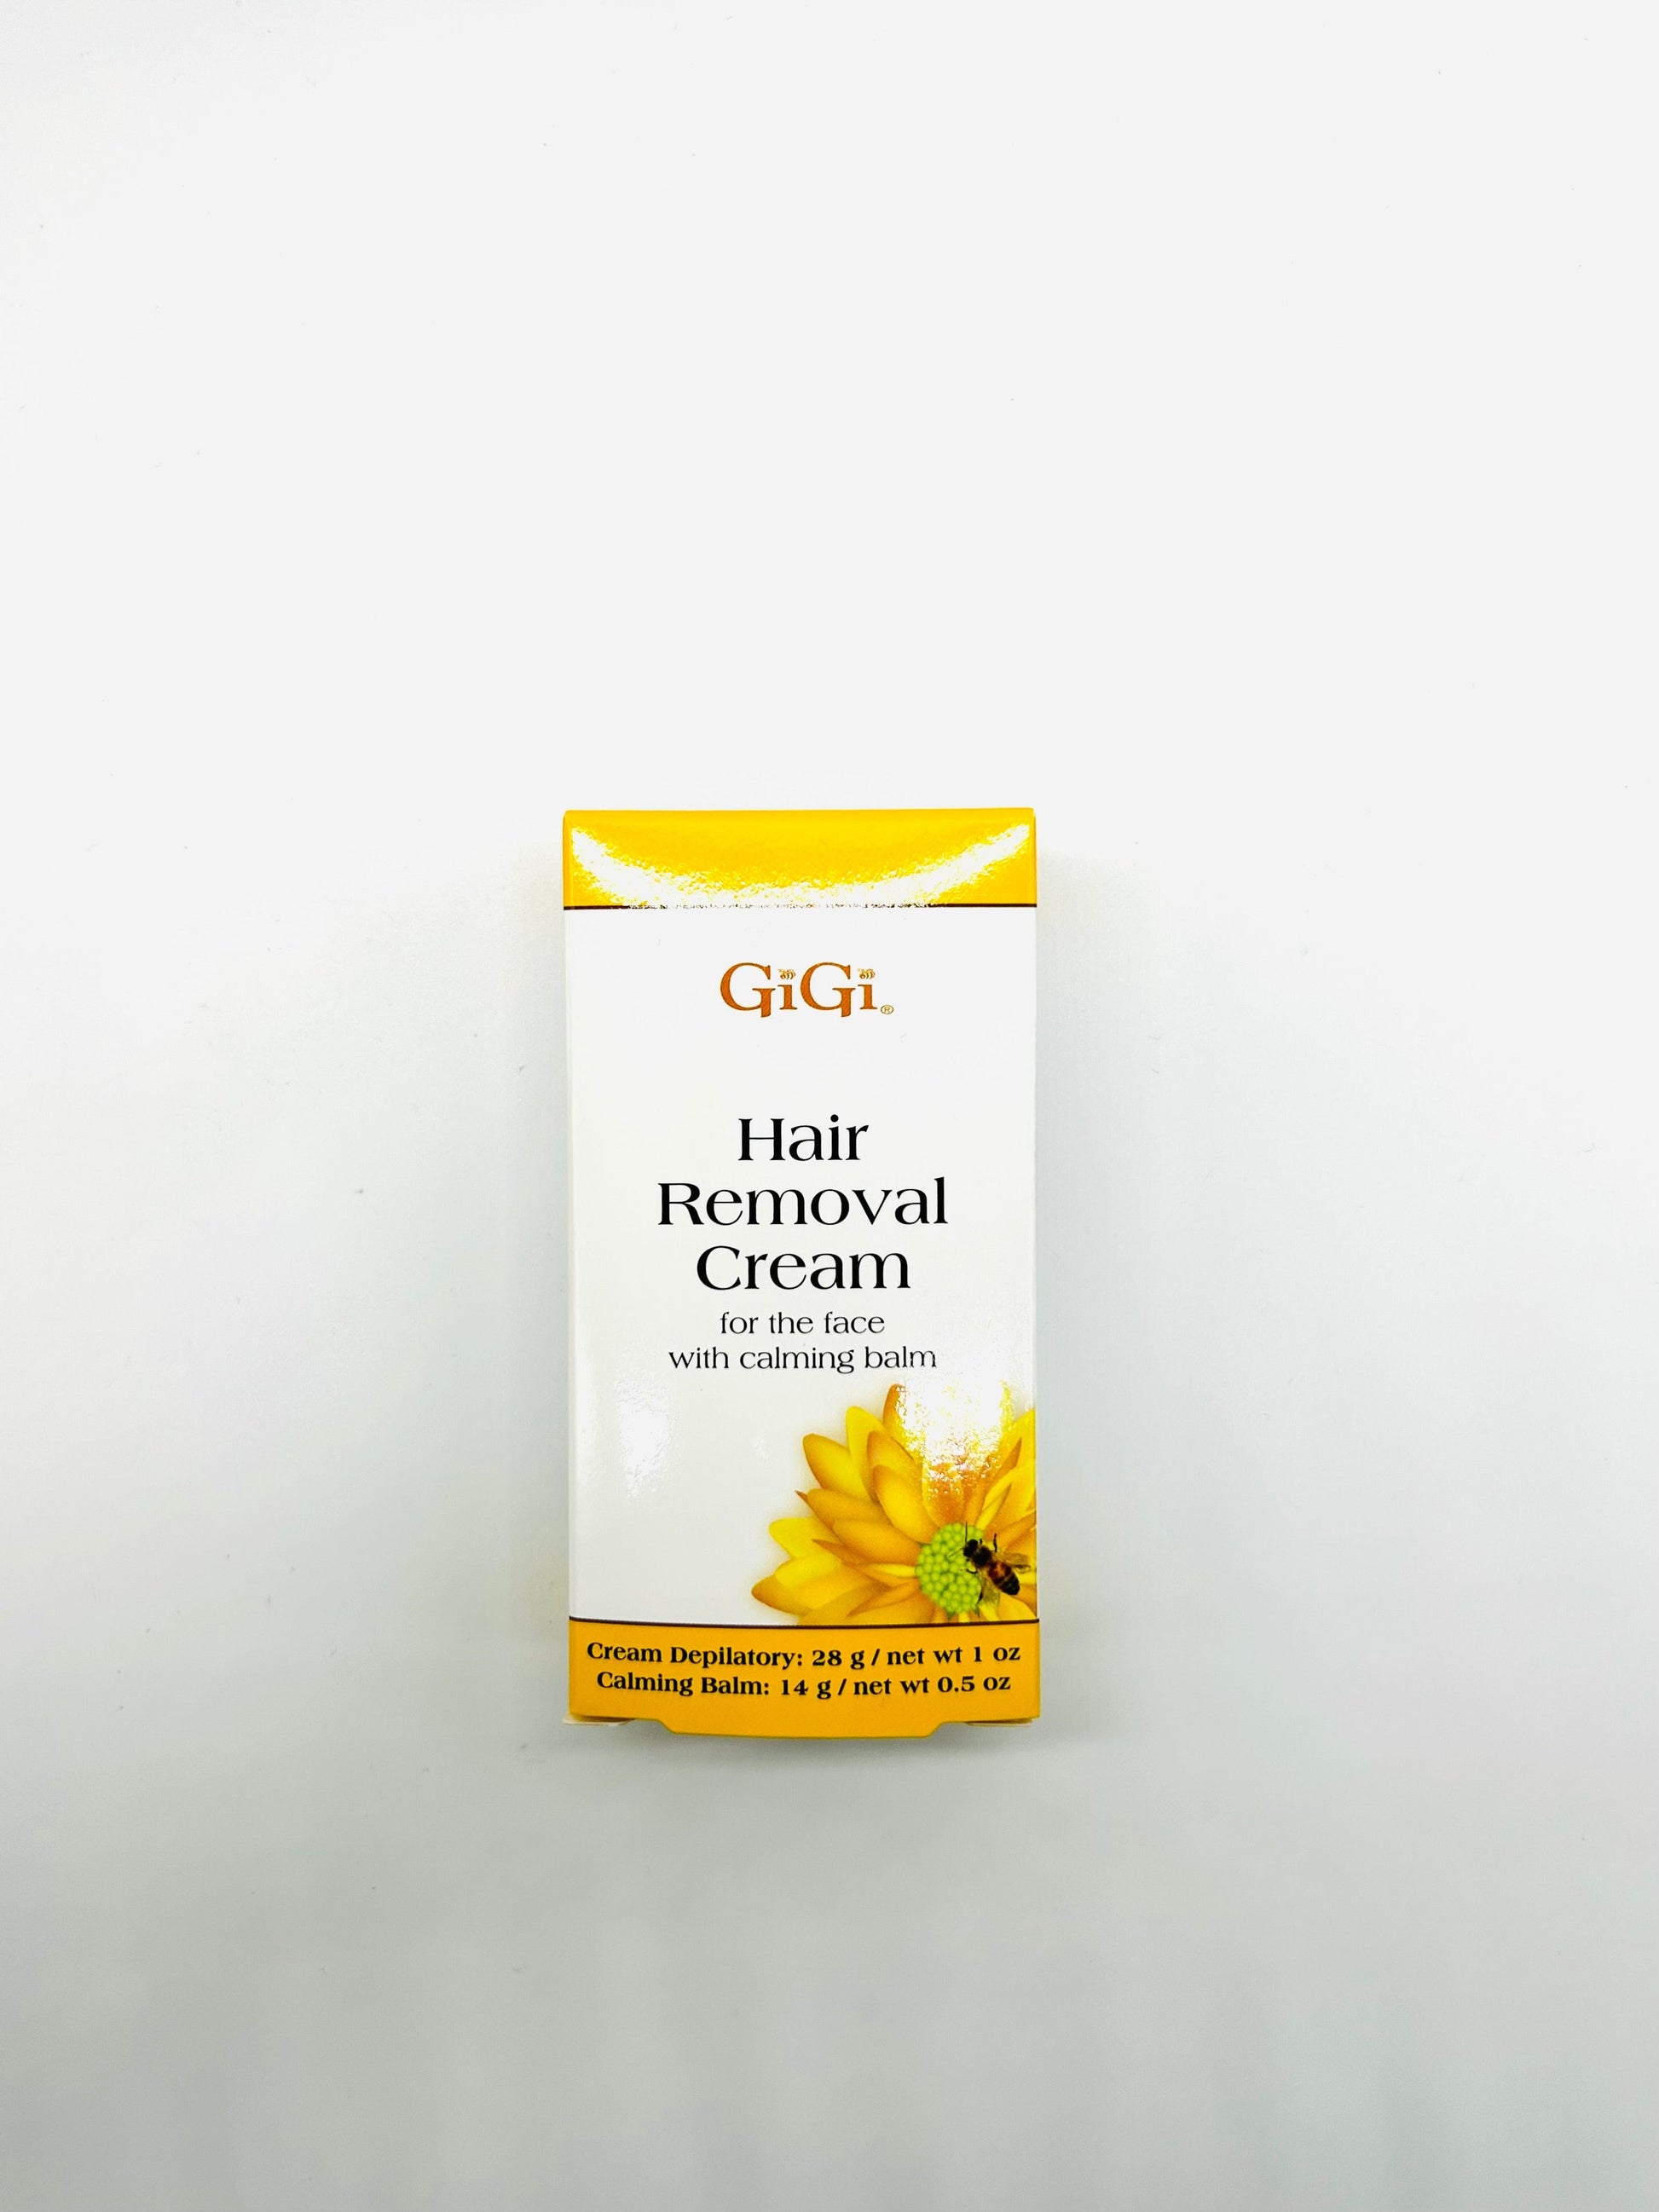 GiGi Hair Removal Face Cream 1 oz + Calming Balm 0.5 oz Health & Beauty